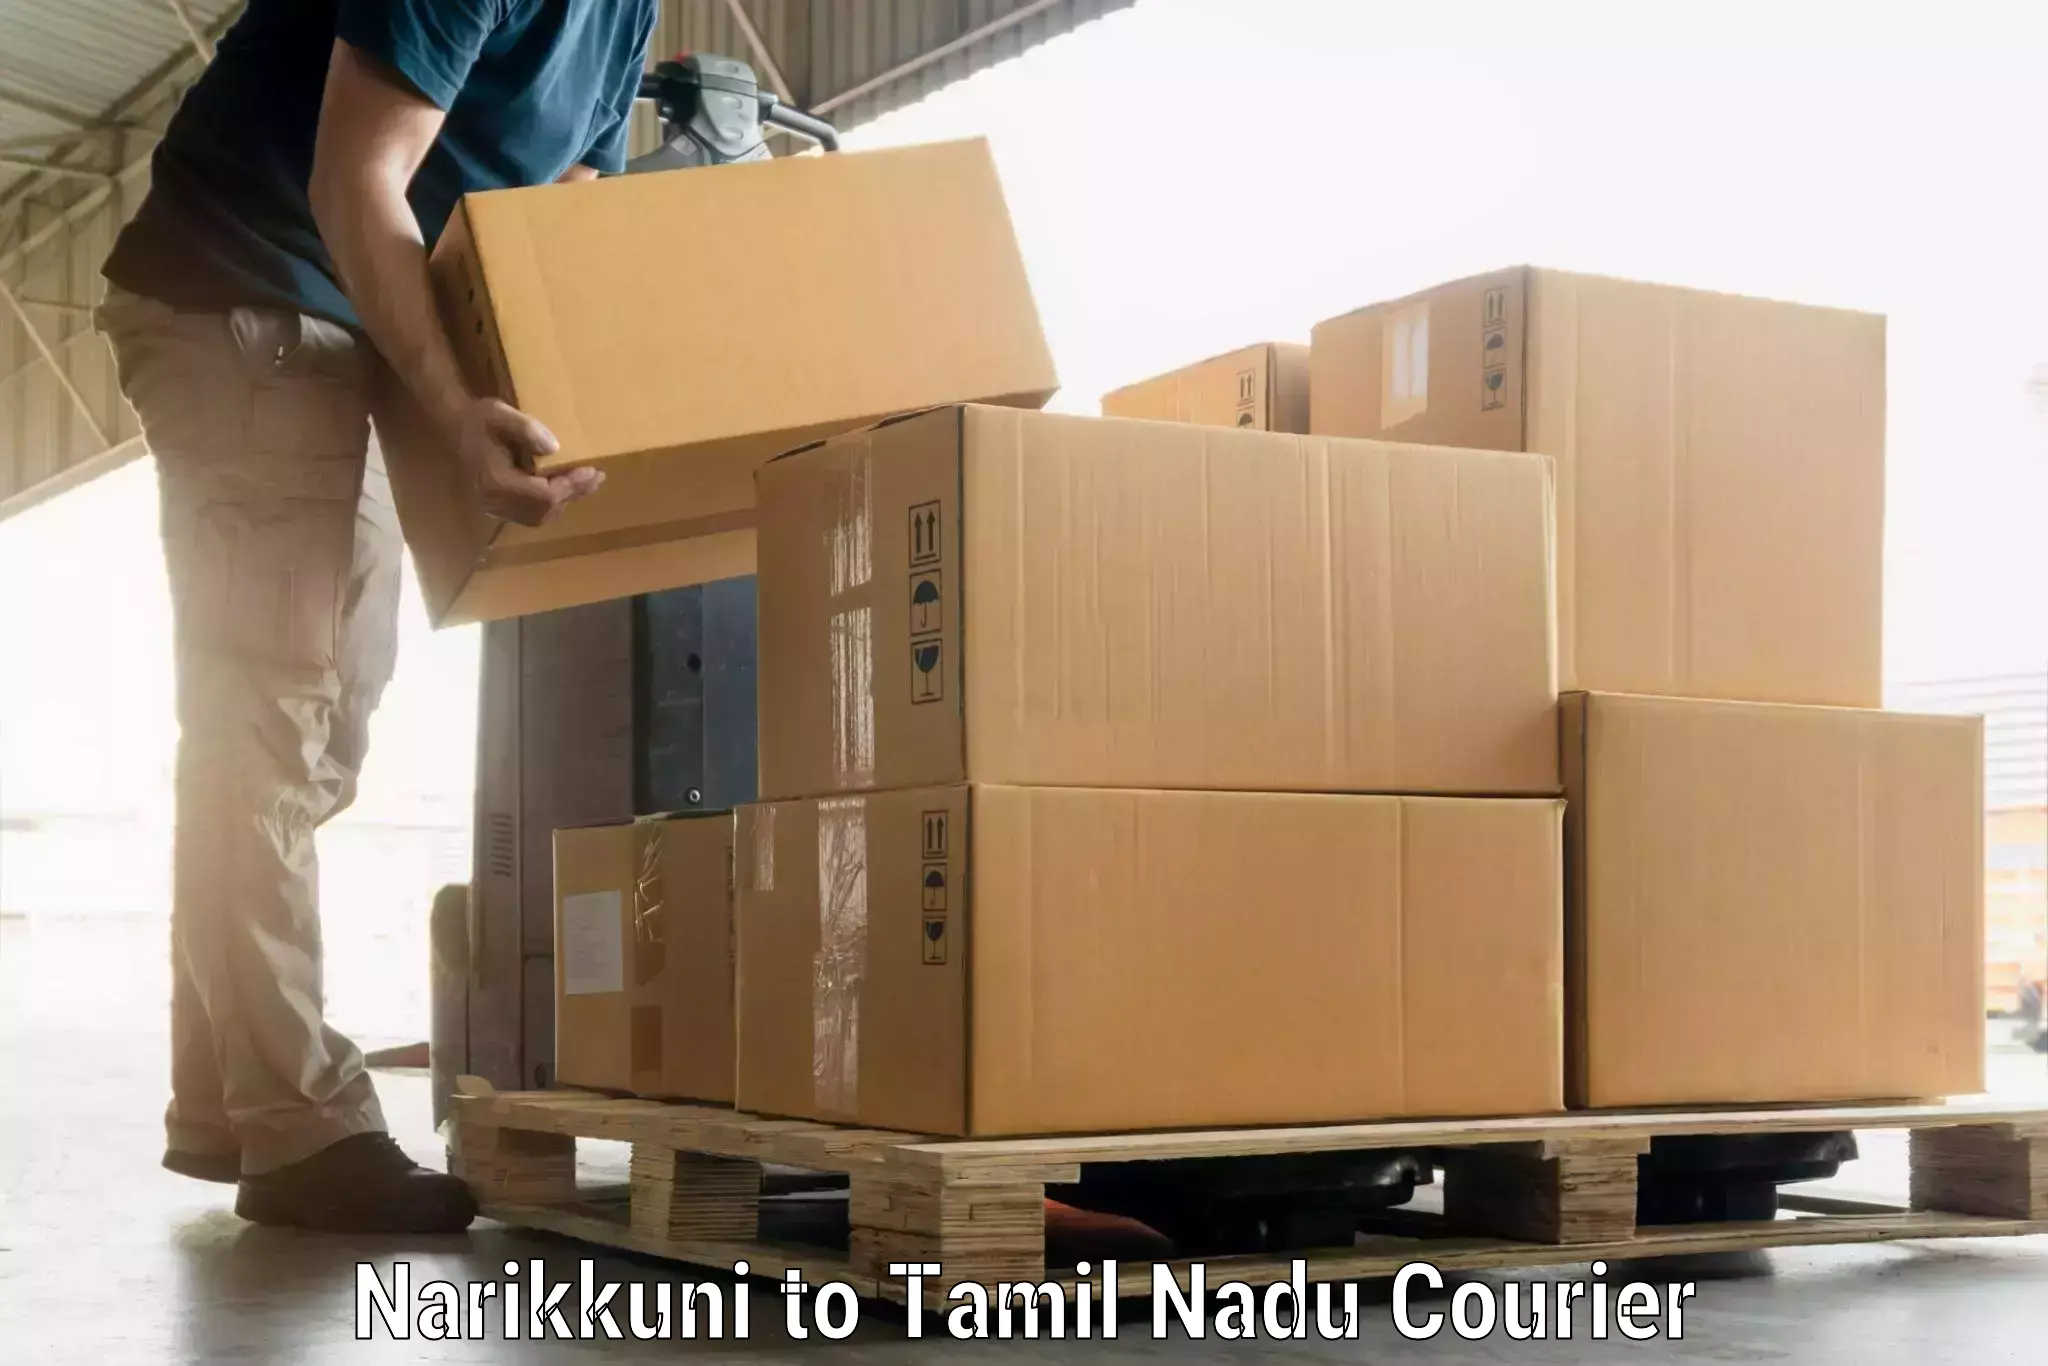 Luggage delivery optimization Narikkuni to Vickramasingapuram